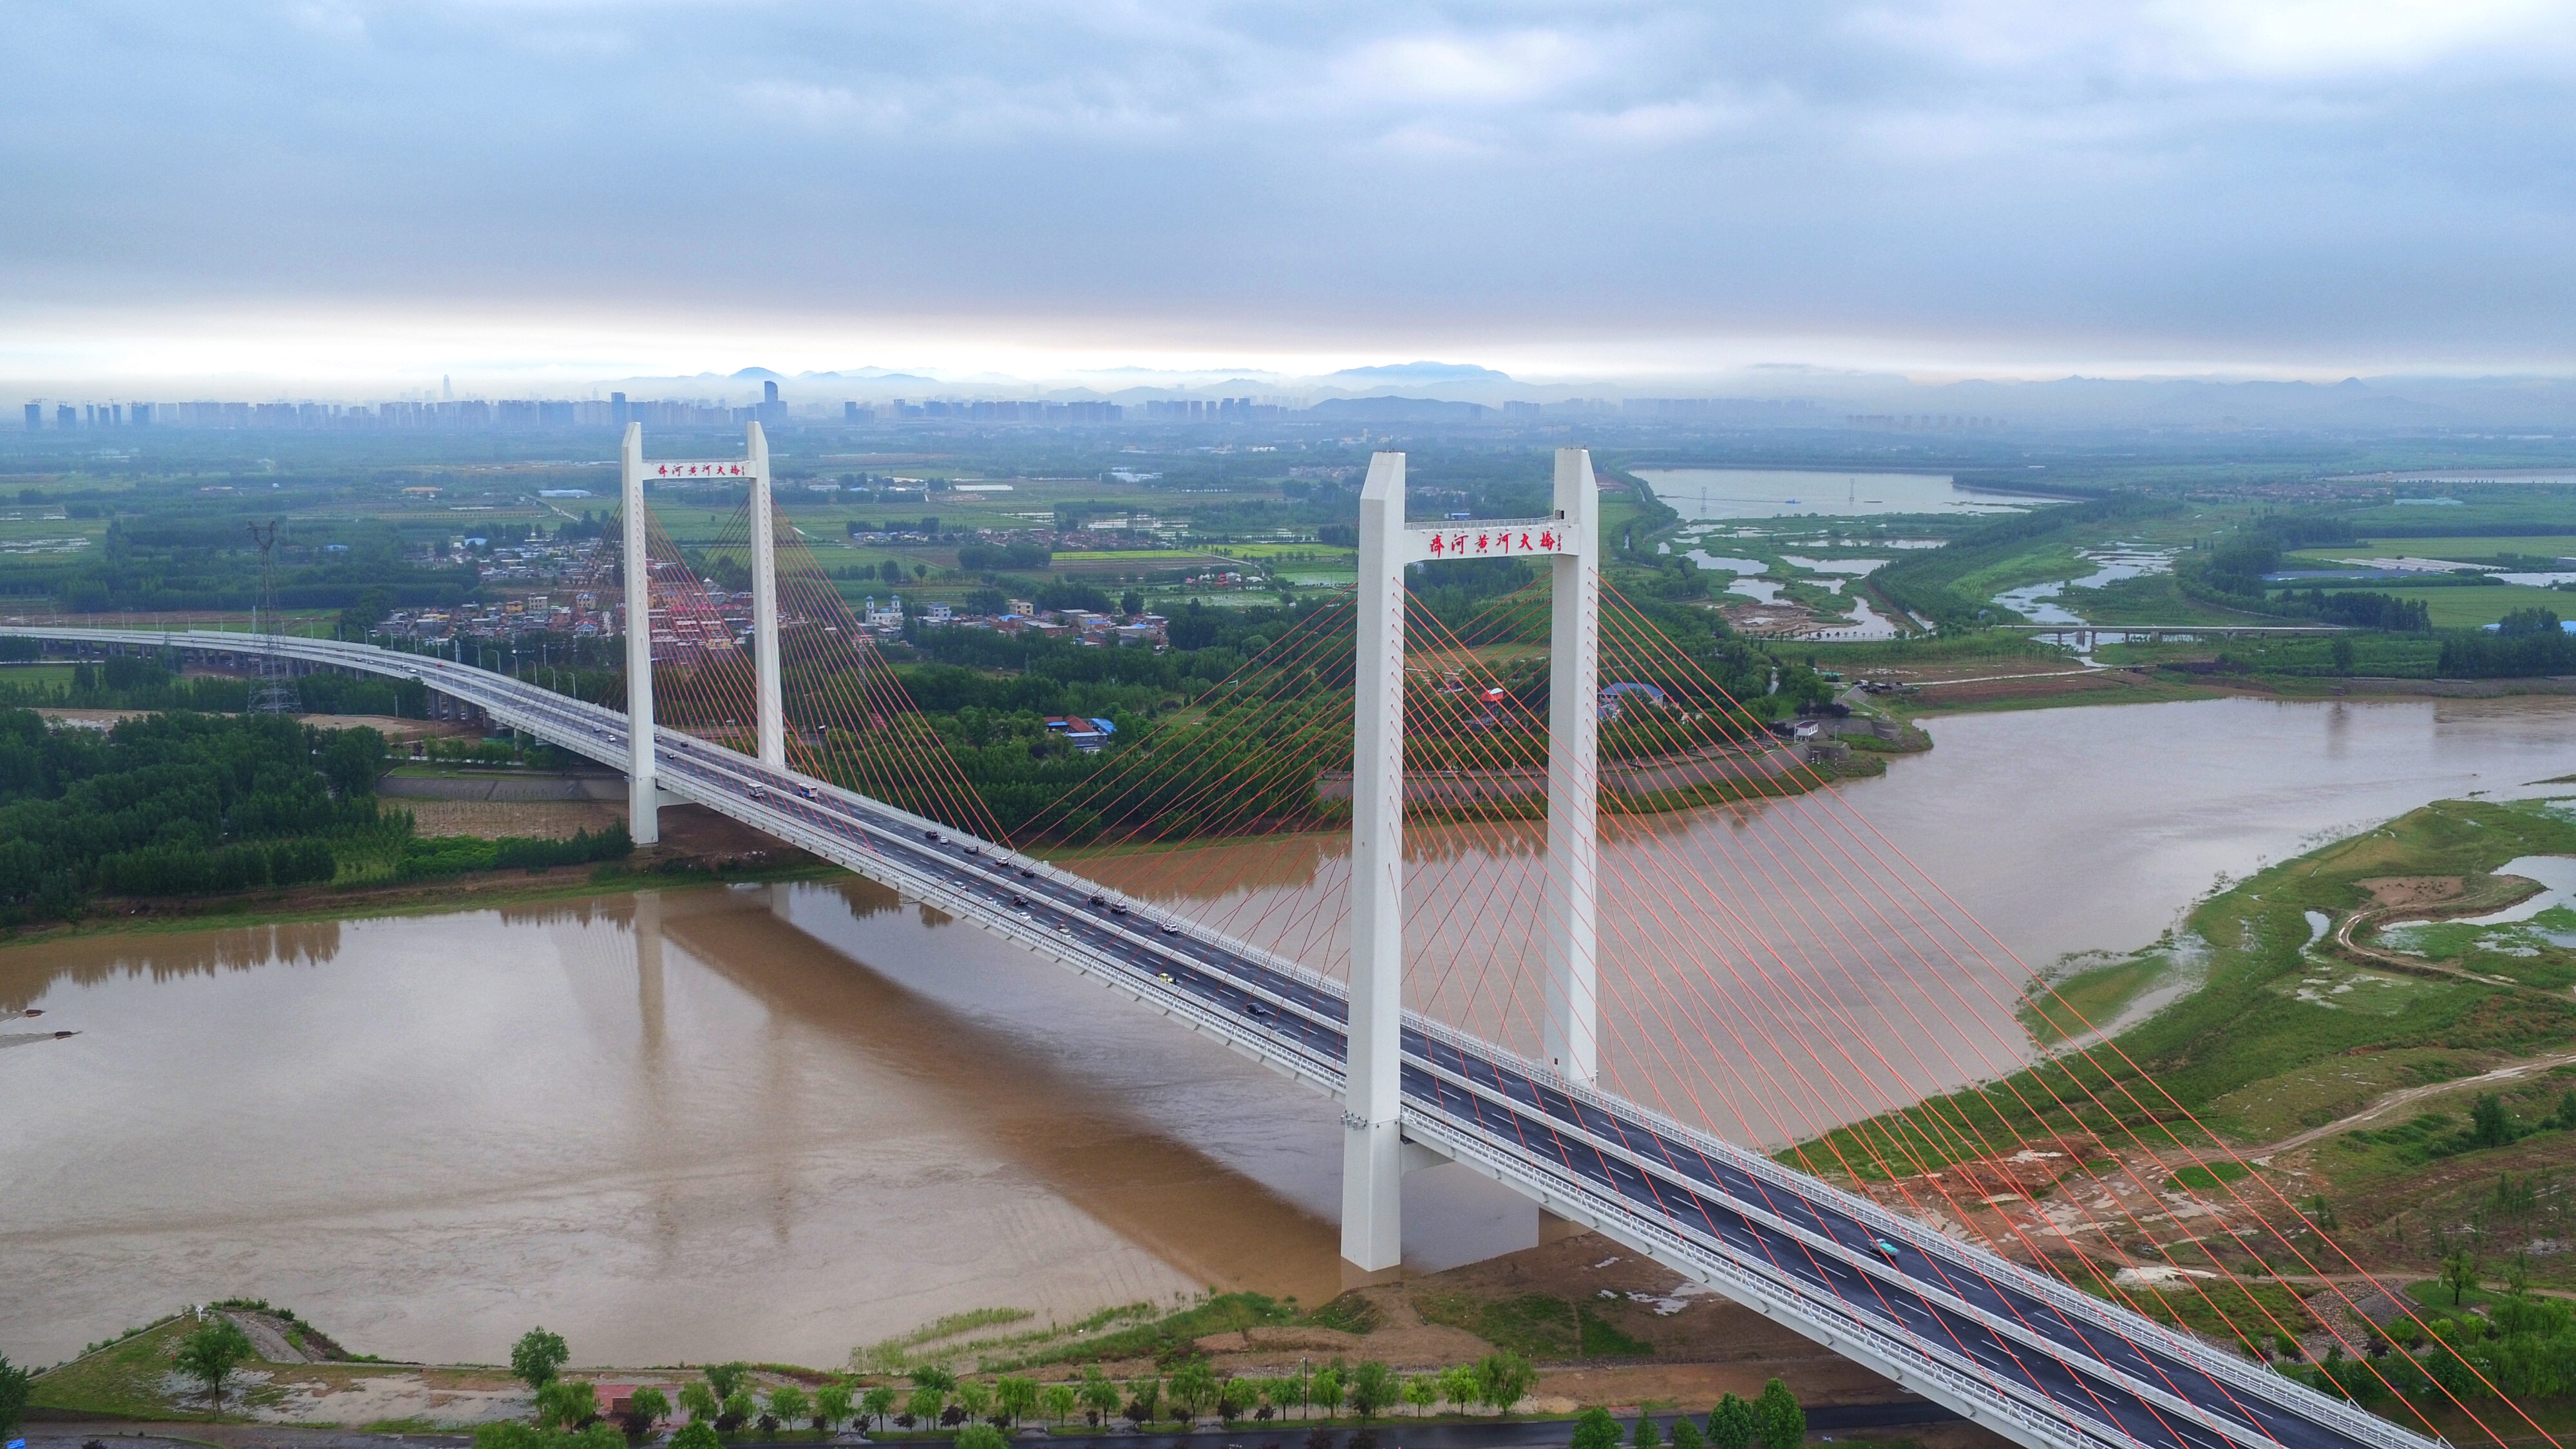 齐河黄河大桥建成通车,一座惠民桥带动两座城